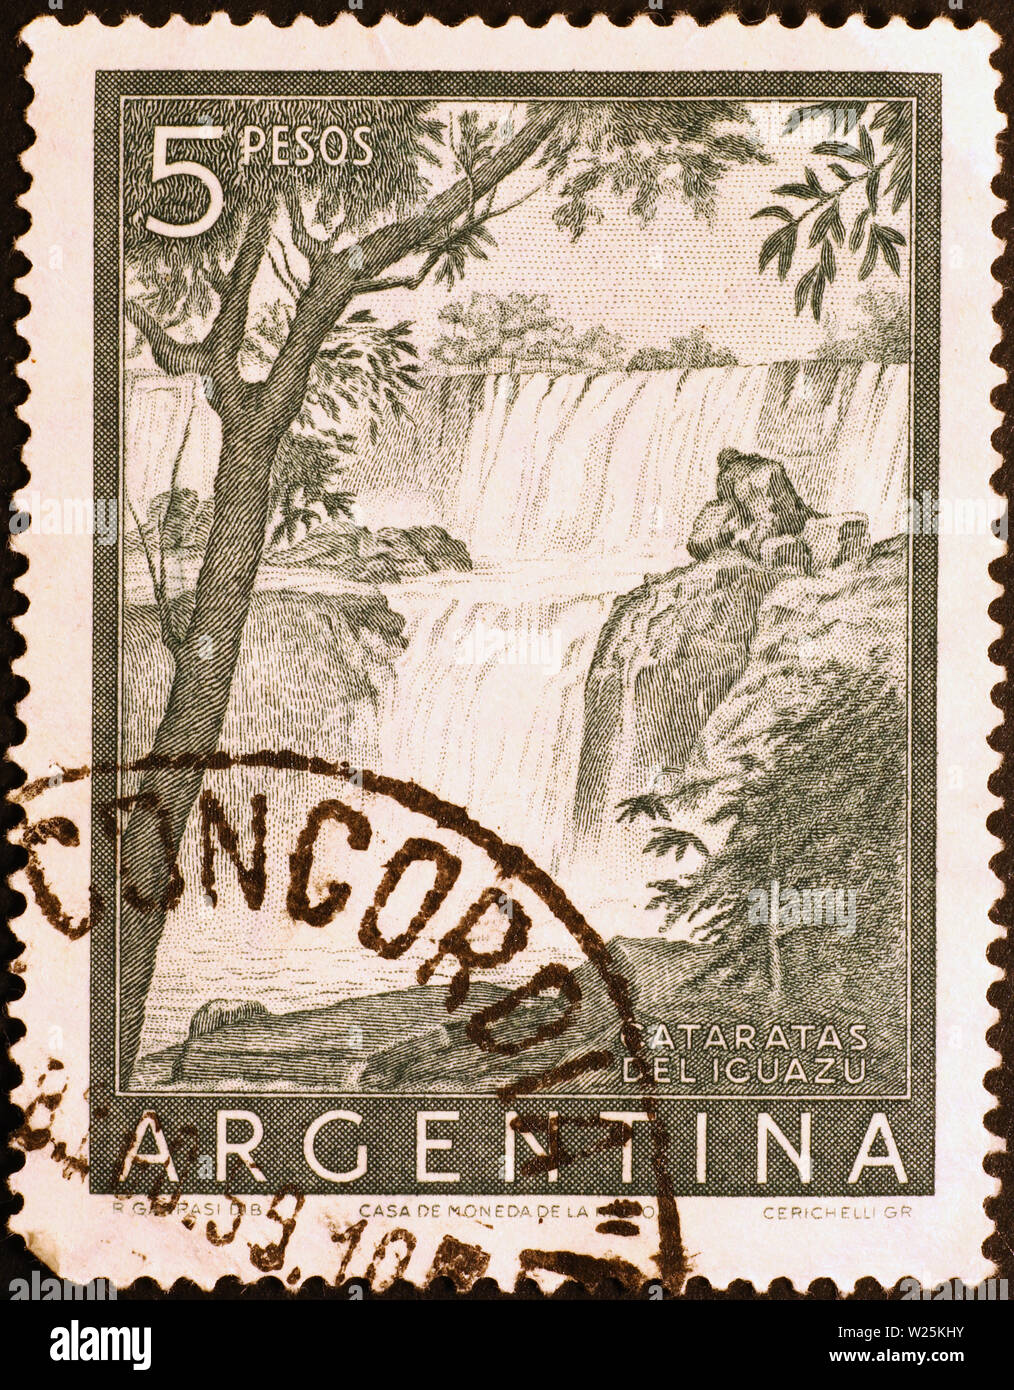 Iguazu Falls dans le vieux timbre-poste de l'Argentine Banque D'Images